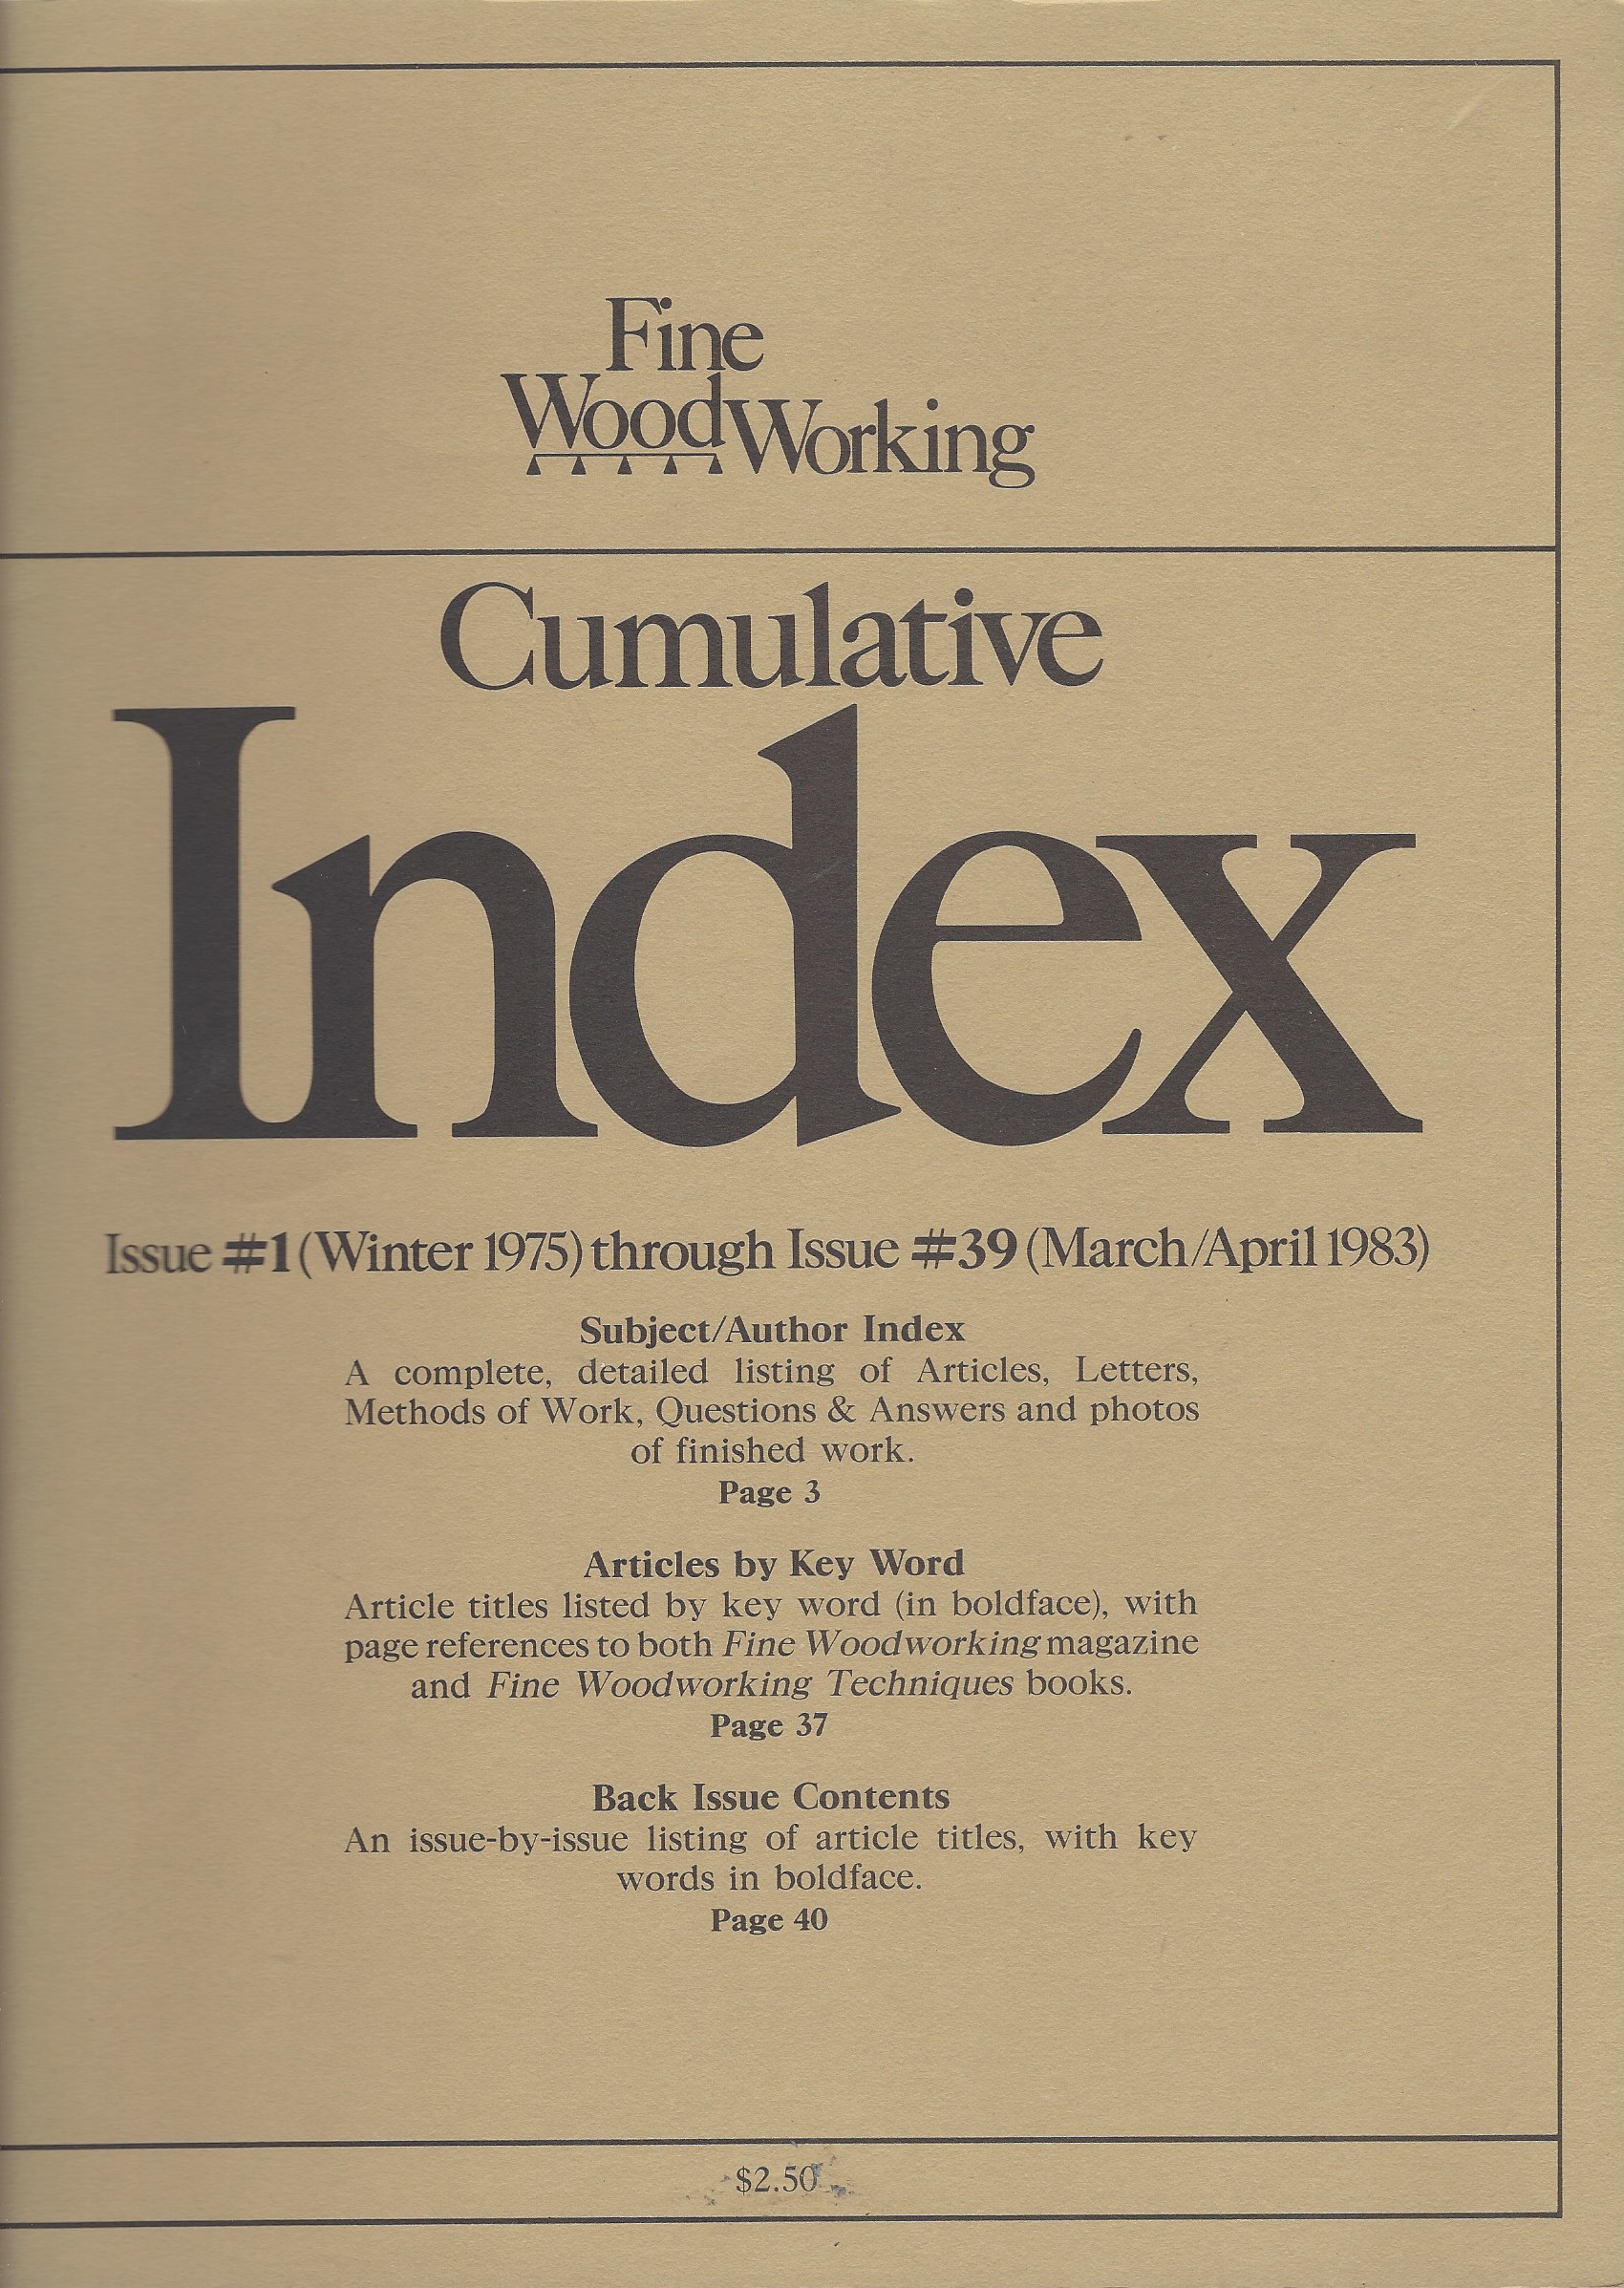 HODGES HARRIET - Fine Woodworking Cumulative Index Issue #1 Through Issue #39